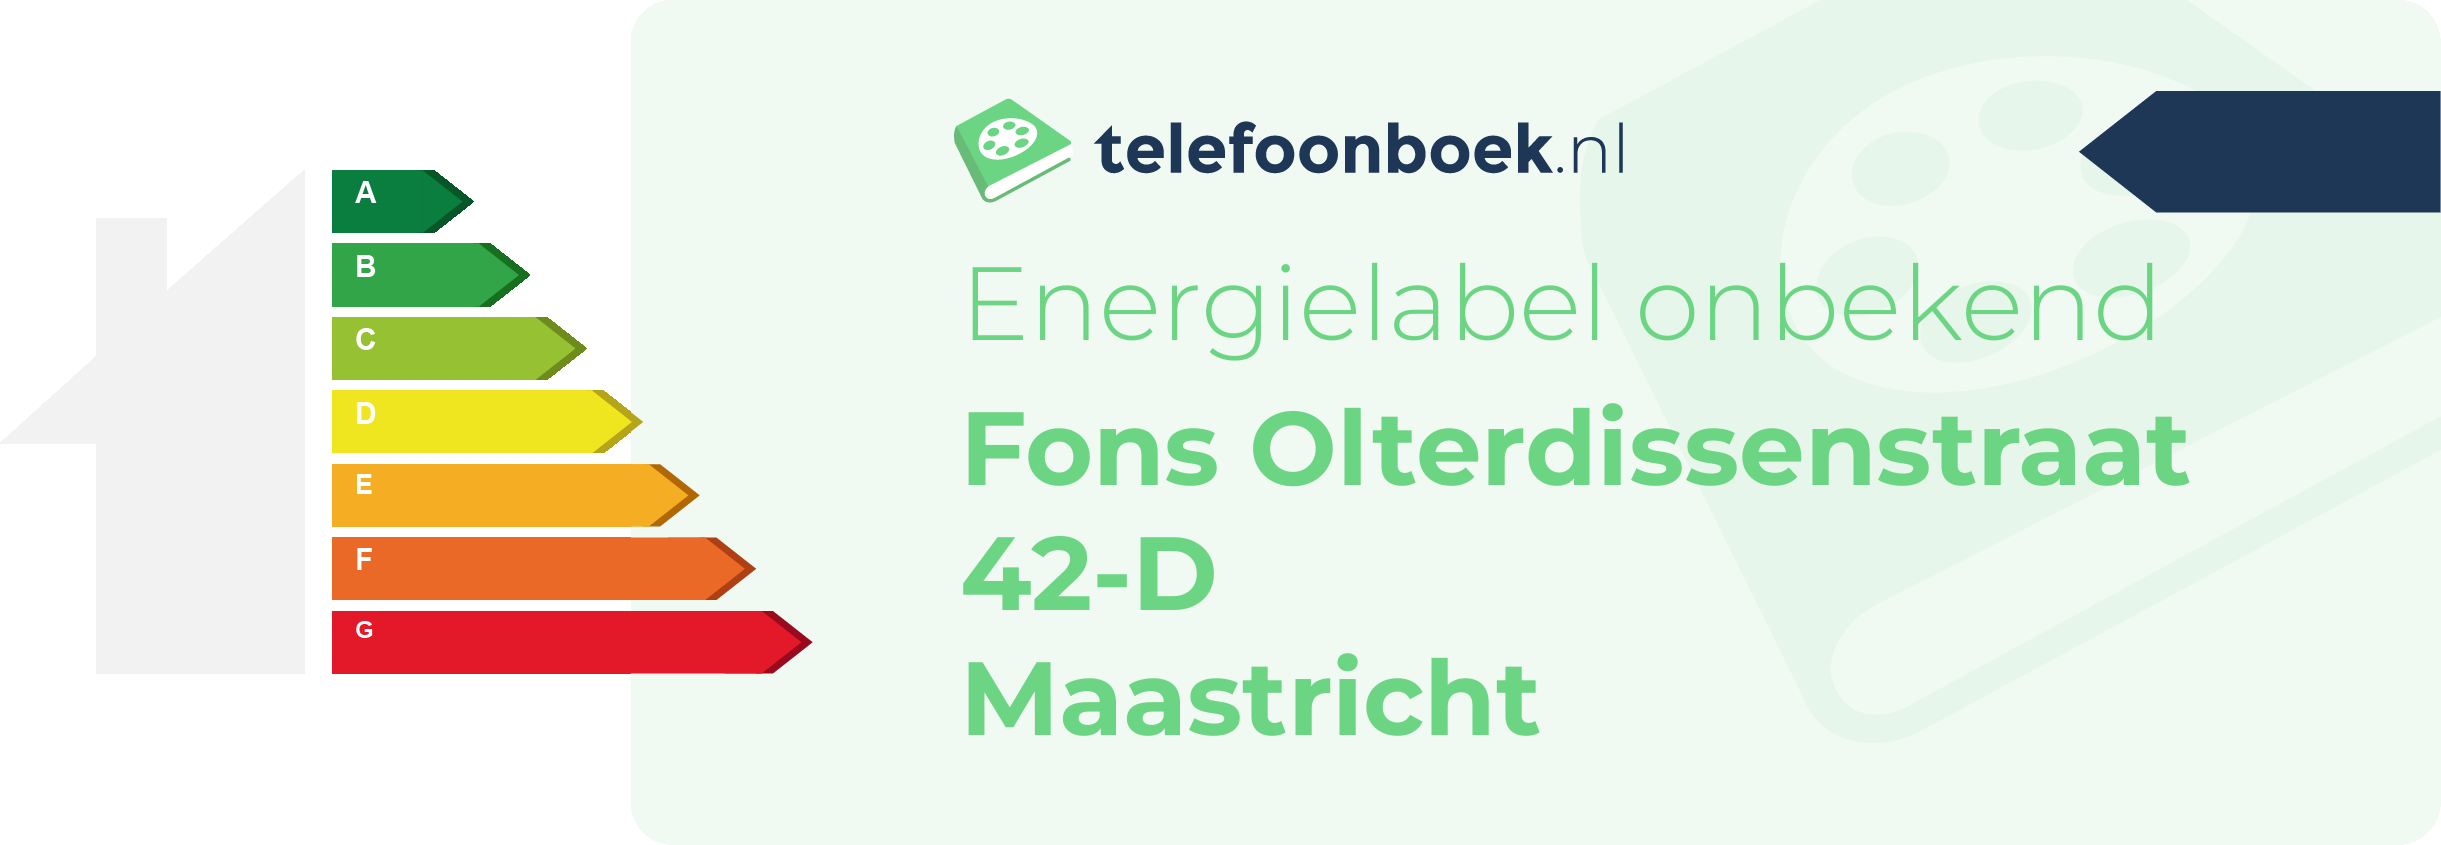 Energielabel Fons Olterdissenstraat 42-D Maastricht